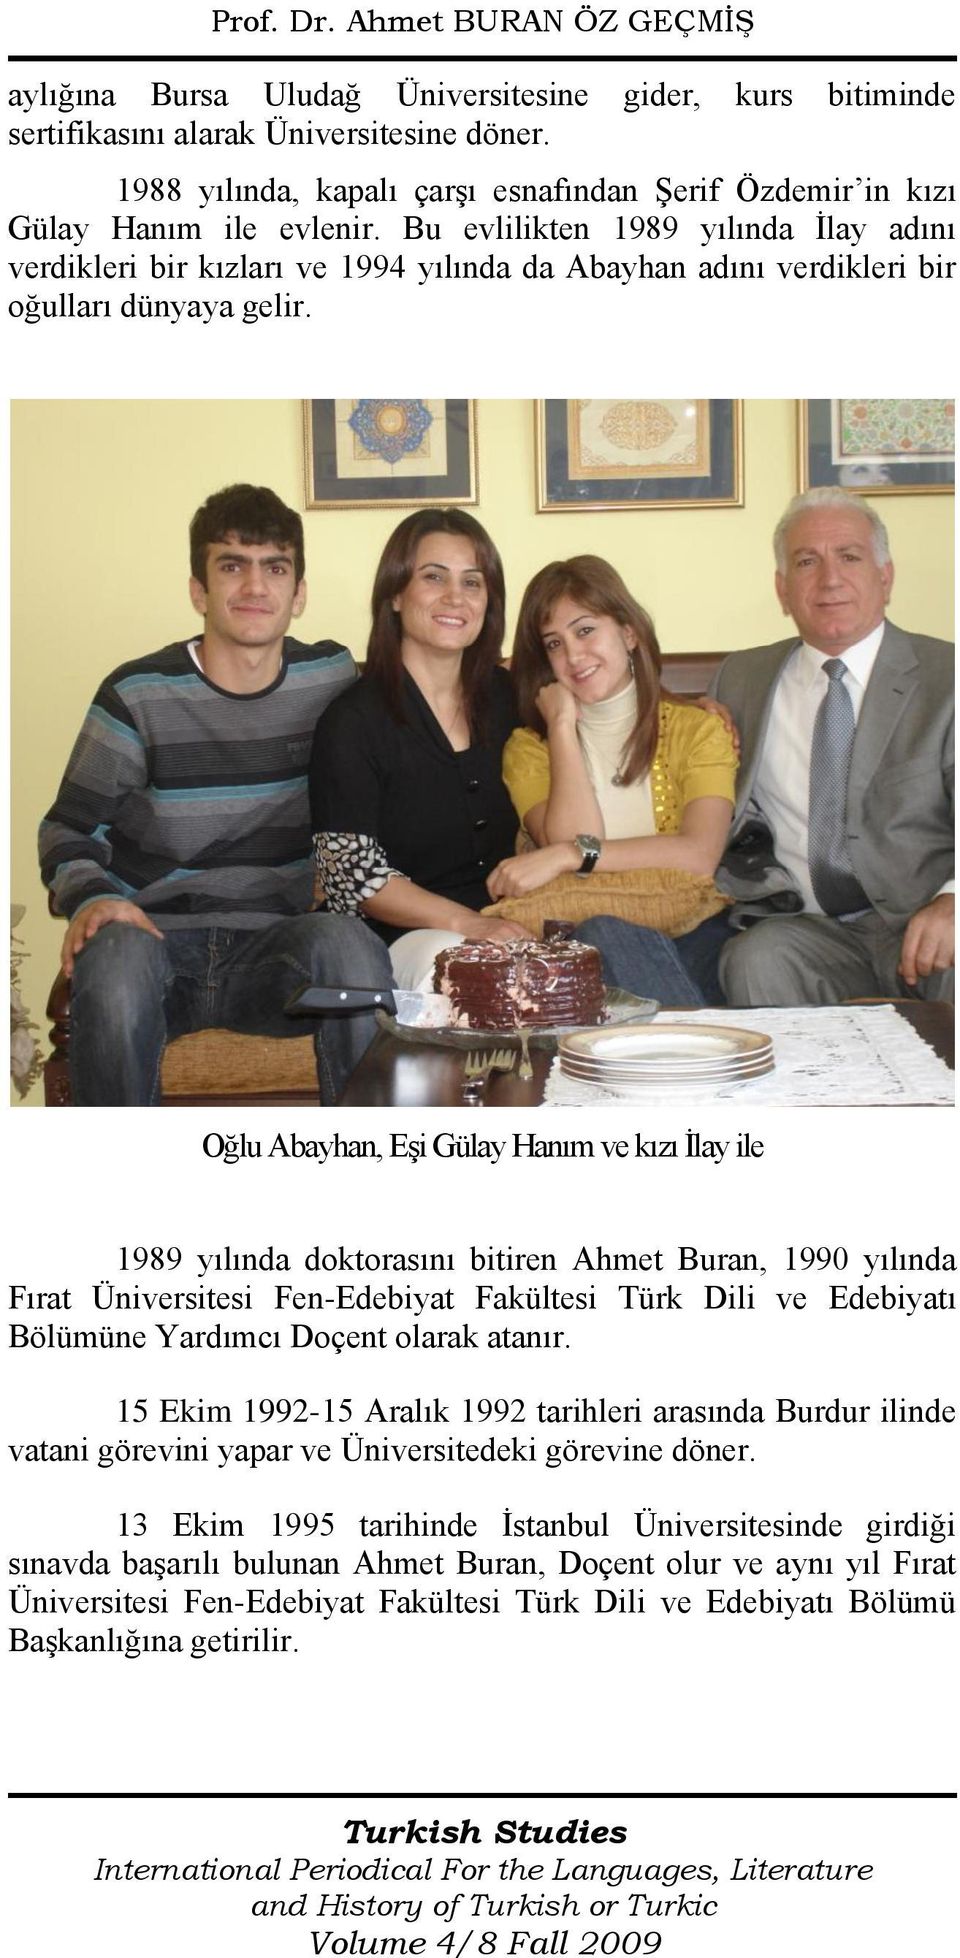 Oğlu Abayhan, Eşi Gülay Hanım ve kızı İlay ile 1989 yılında doktorasını bitiren Ahmet Buran, 1990 yılında Fırat Üniversitesi Fen-Edebiyat Fakültesi Türk Dili ve Edebiyatı Bölümüne Yardımcı Doçent